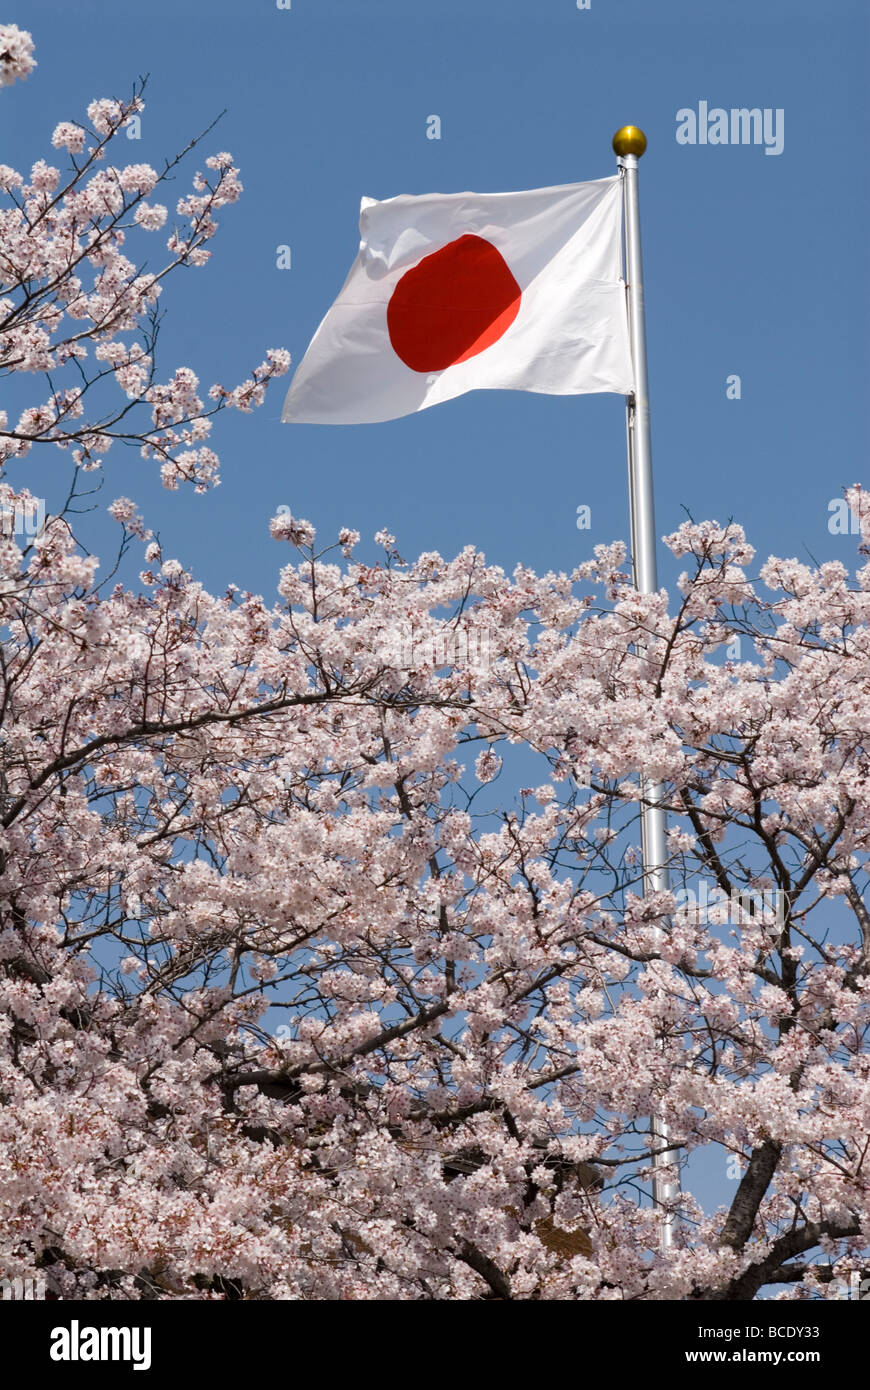 Le hinomaru, ou drapeau national du Japon, est entouré de cerisiers en fleurs Banque D'Images